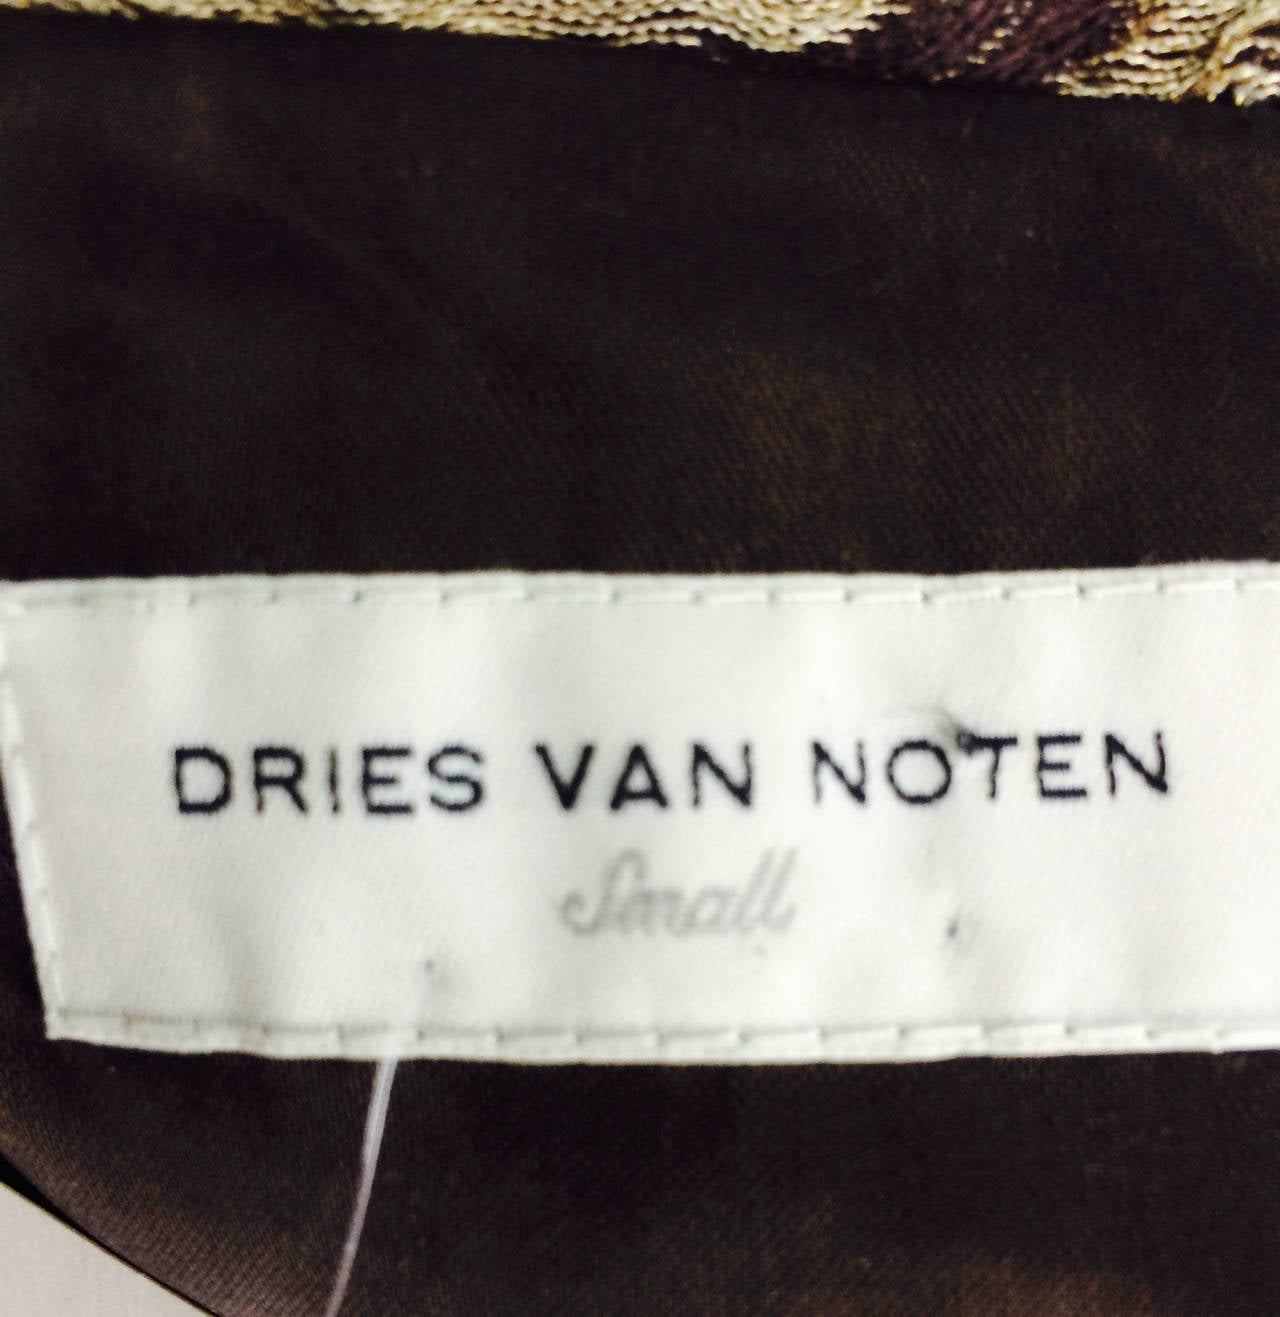 Dries Van Noten bronze gold & chocolate brown metallic brocade coat 3